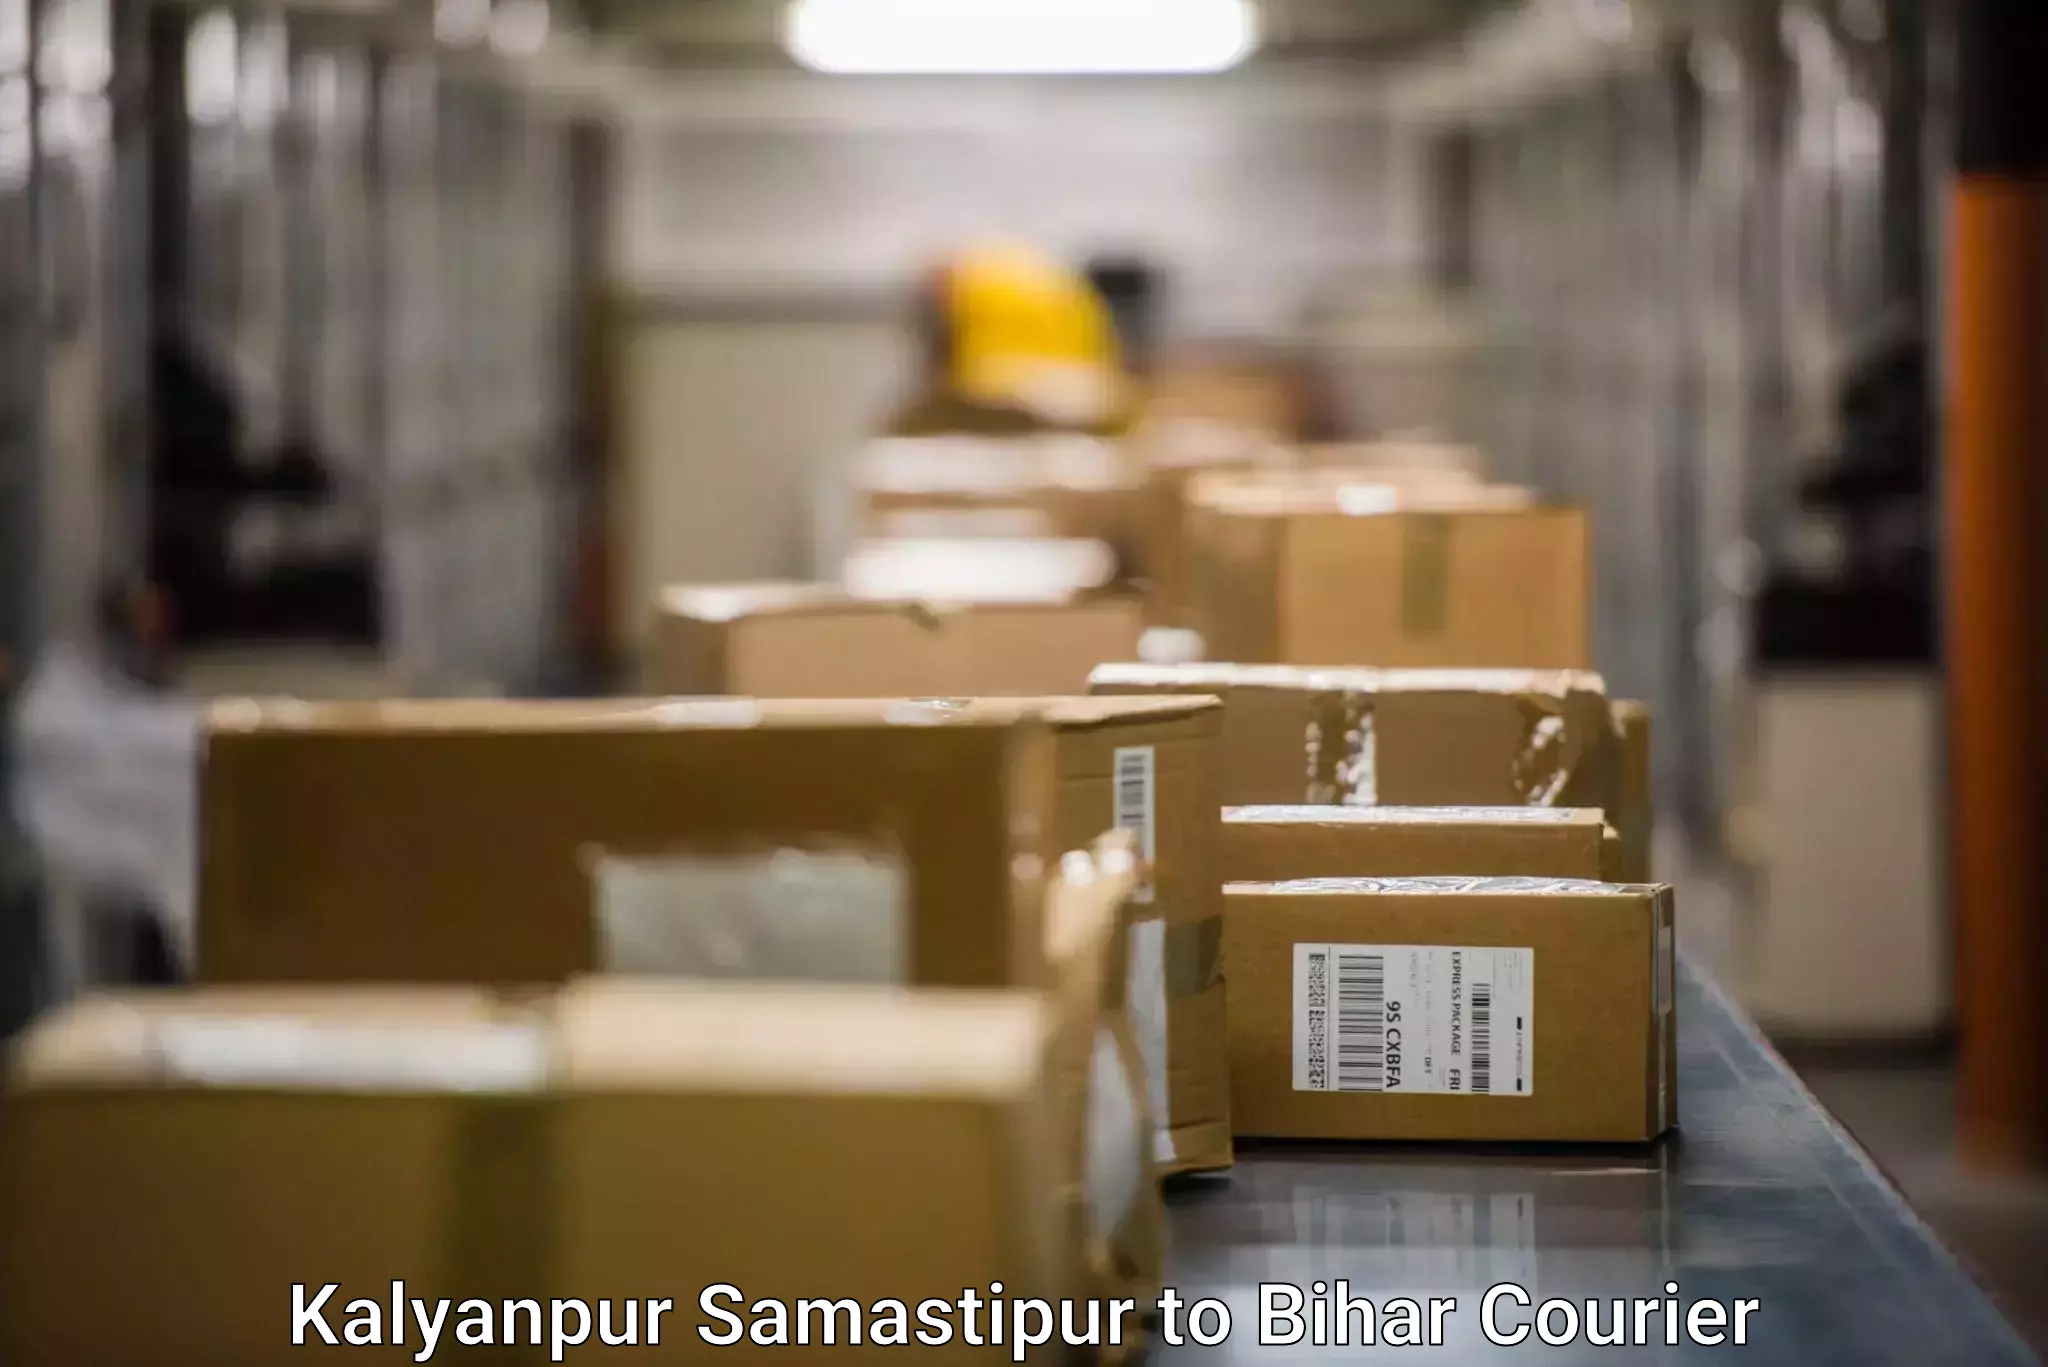 Global logistics network Kalyanpur Samastipur to Kalyanpur Samastipur